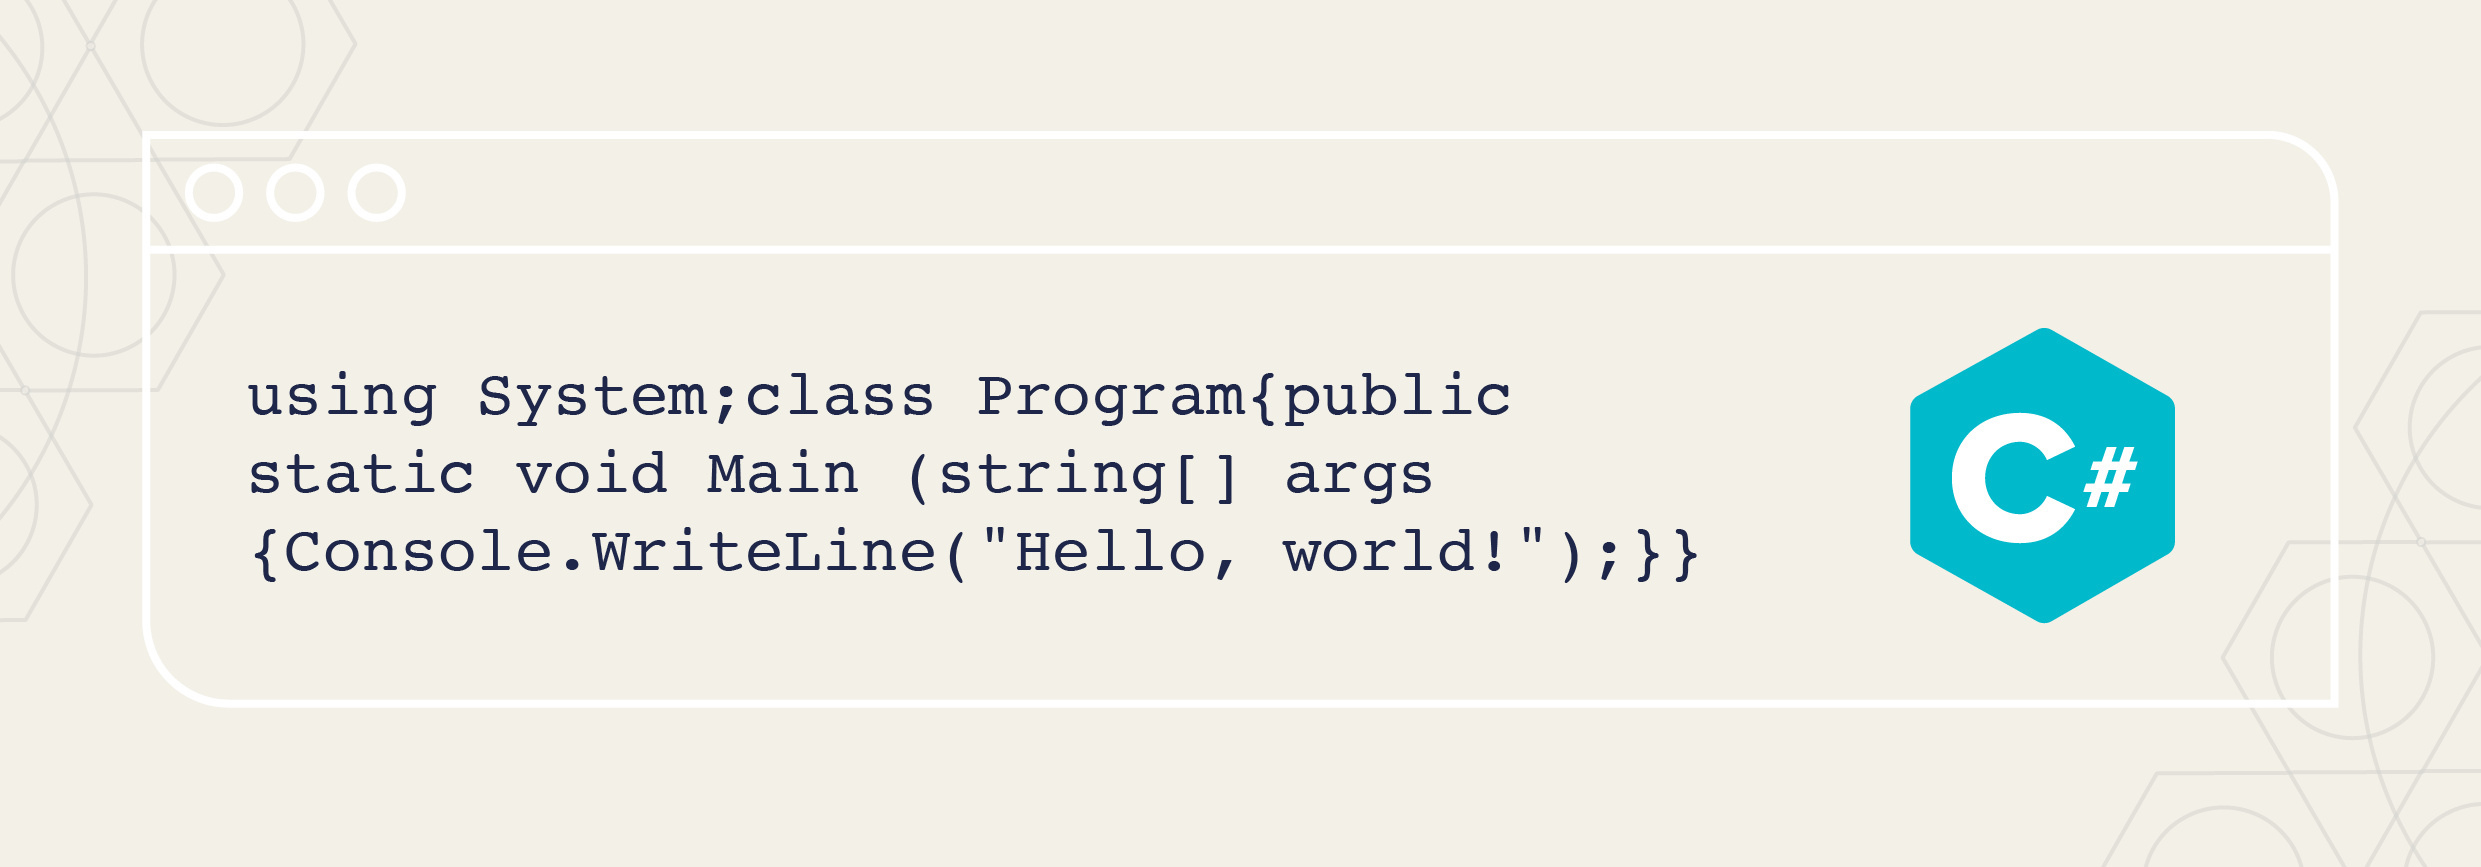 c sharp programming language "hello world" code and logo